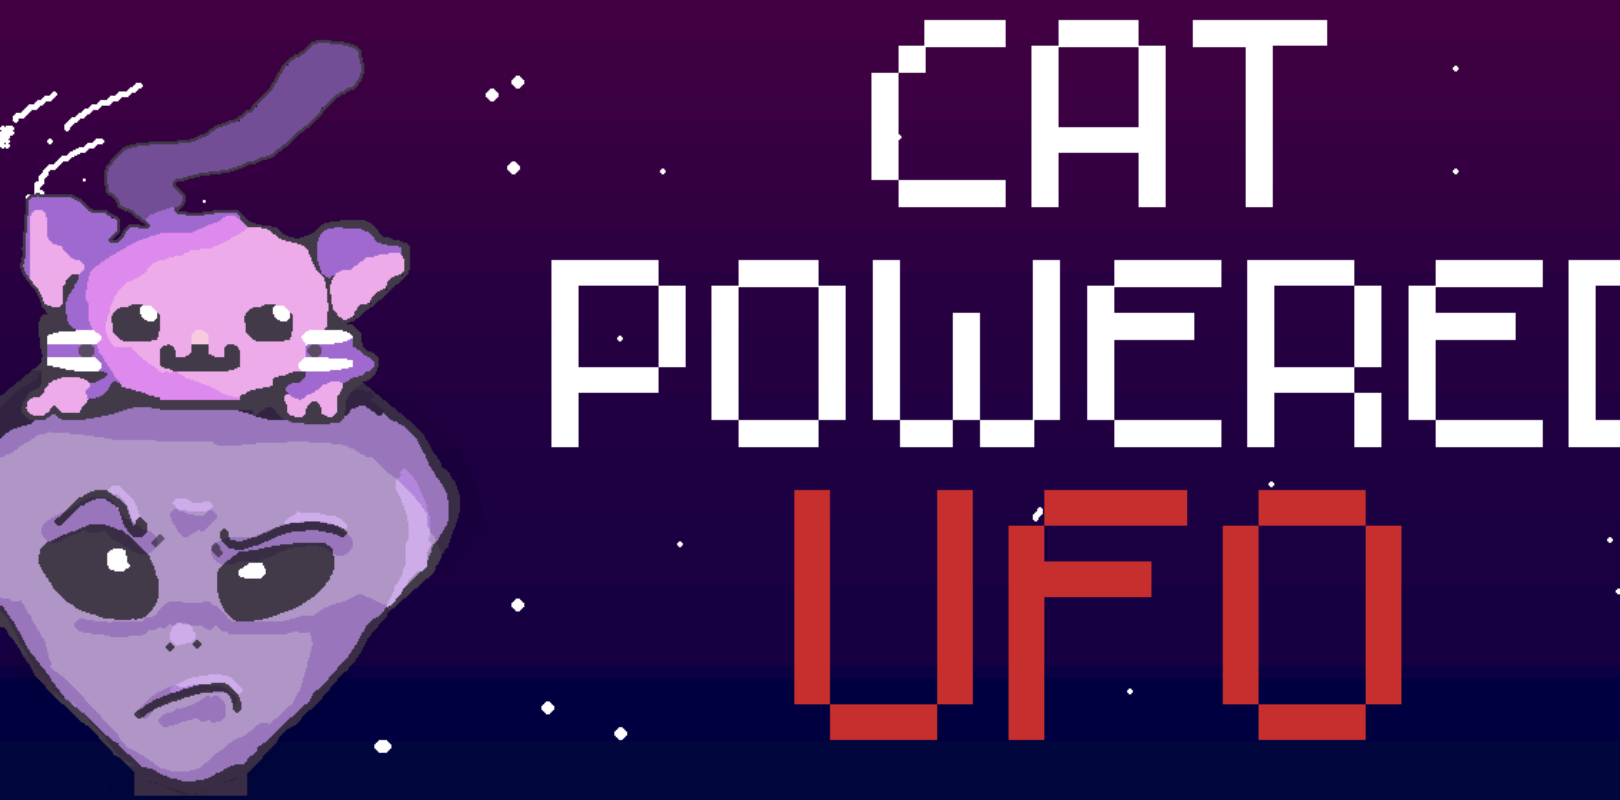 ufo catin kitty cat clicker